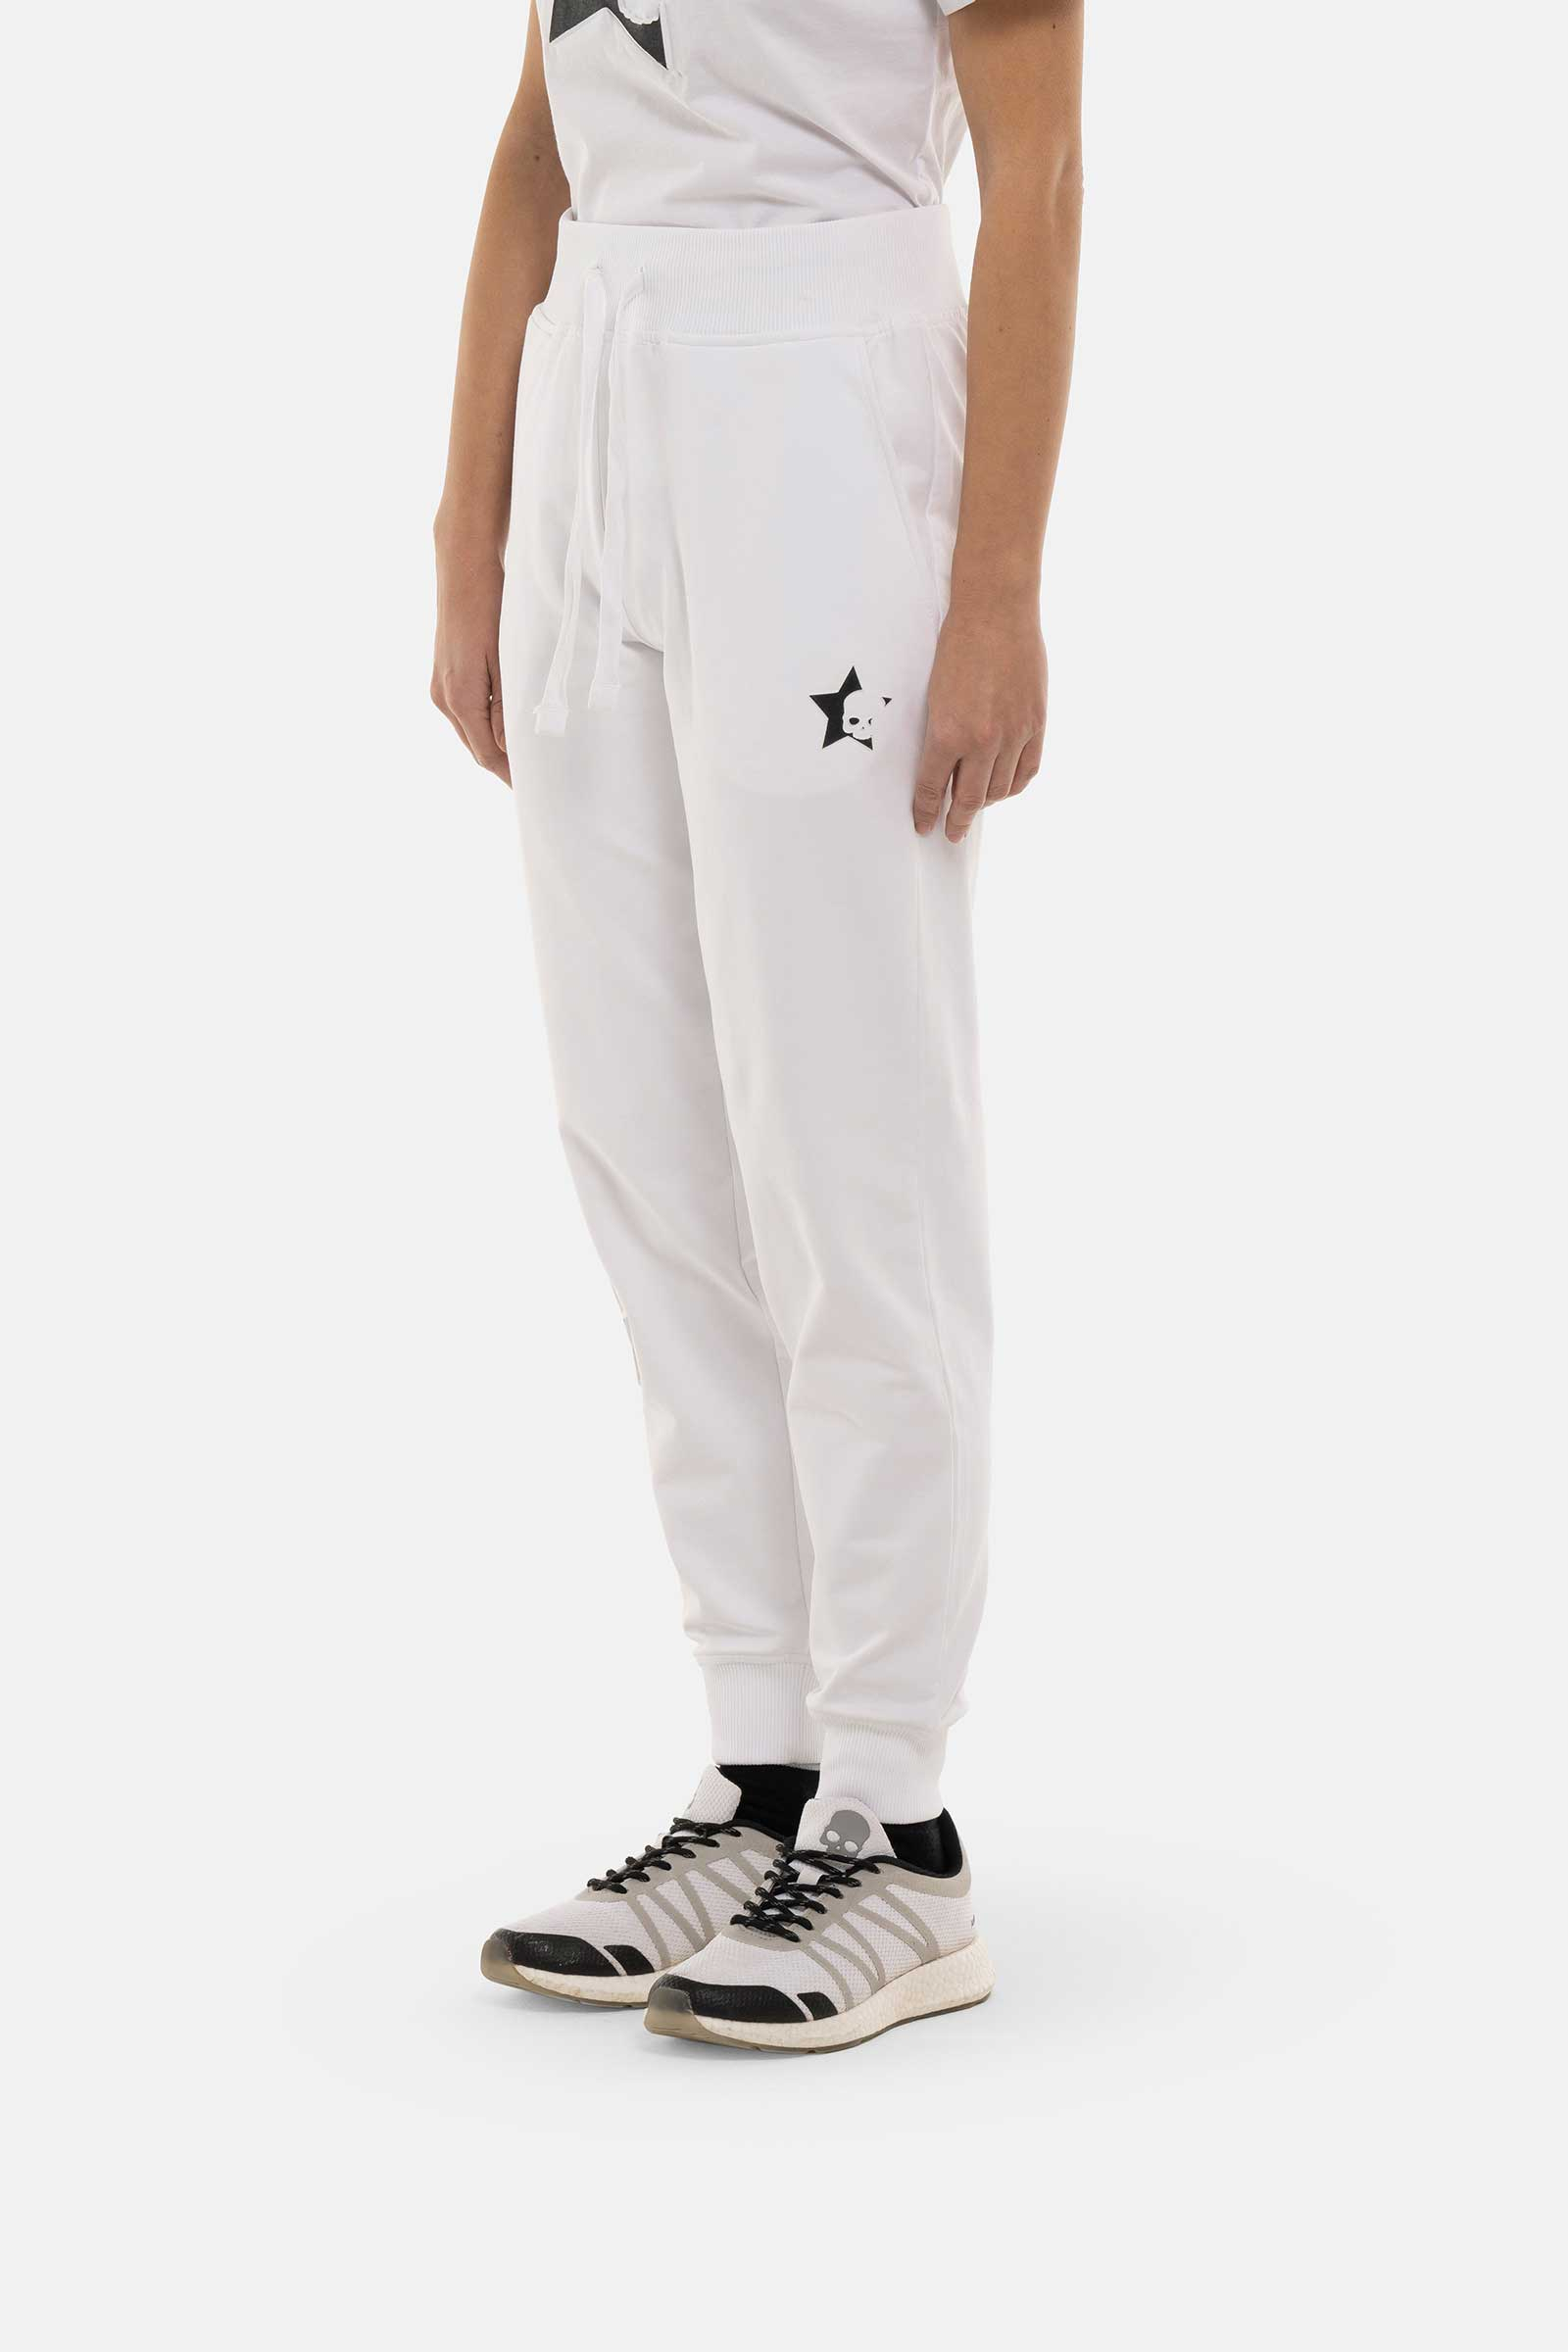 STARS PANTS - WHITE - Hydrogen - Luxury Sportwear